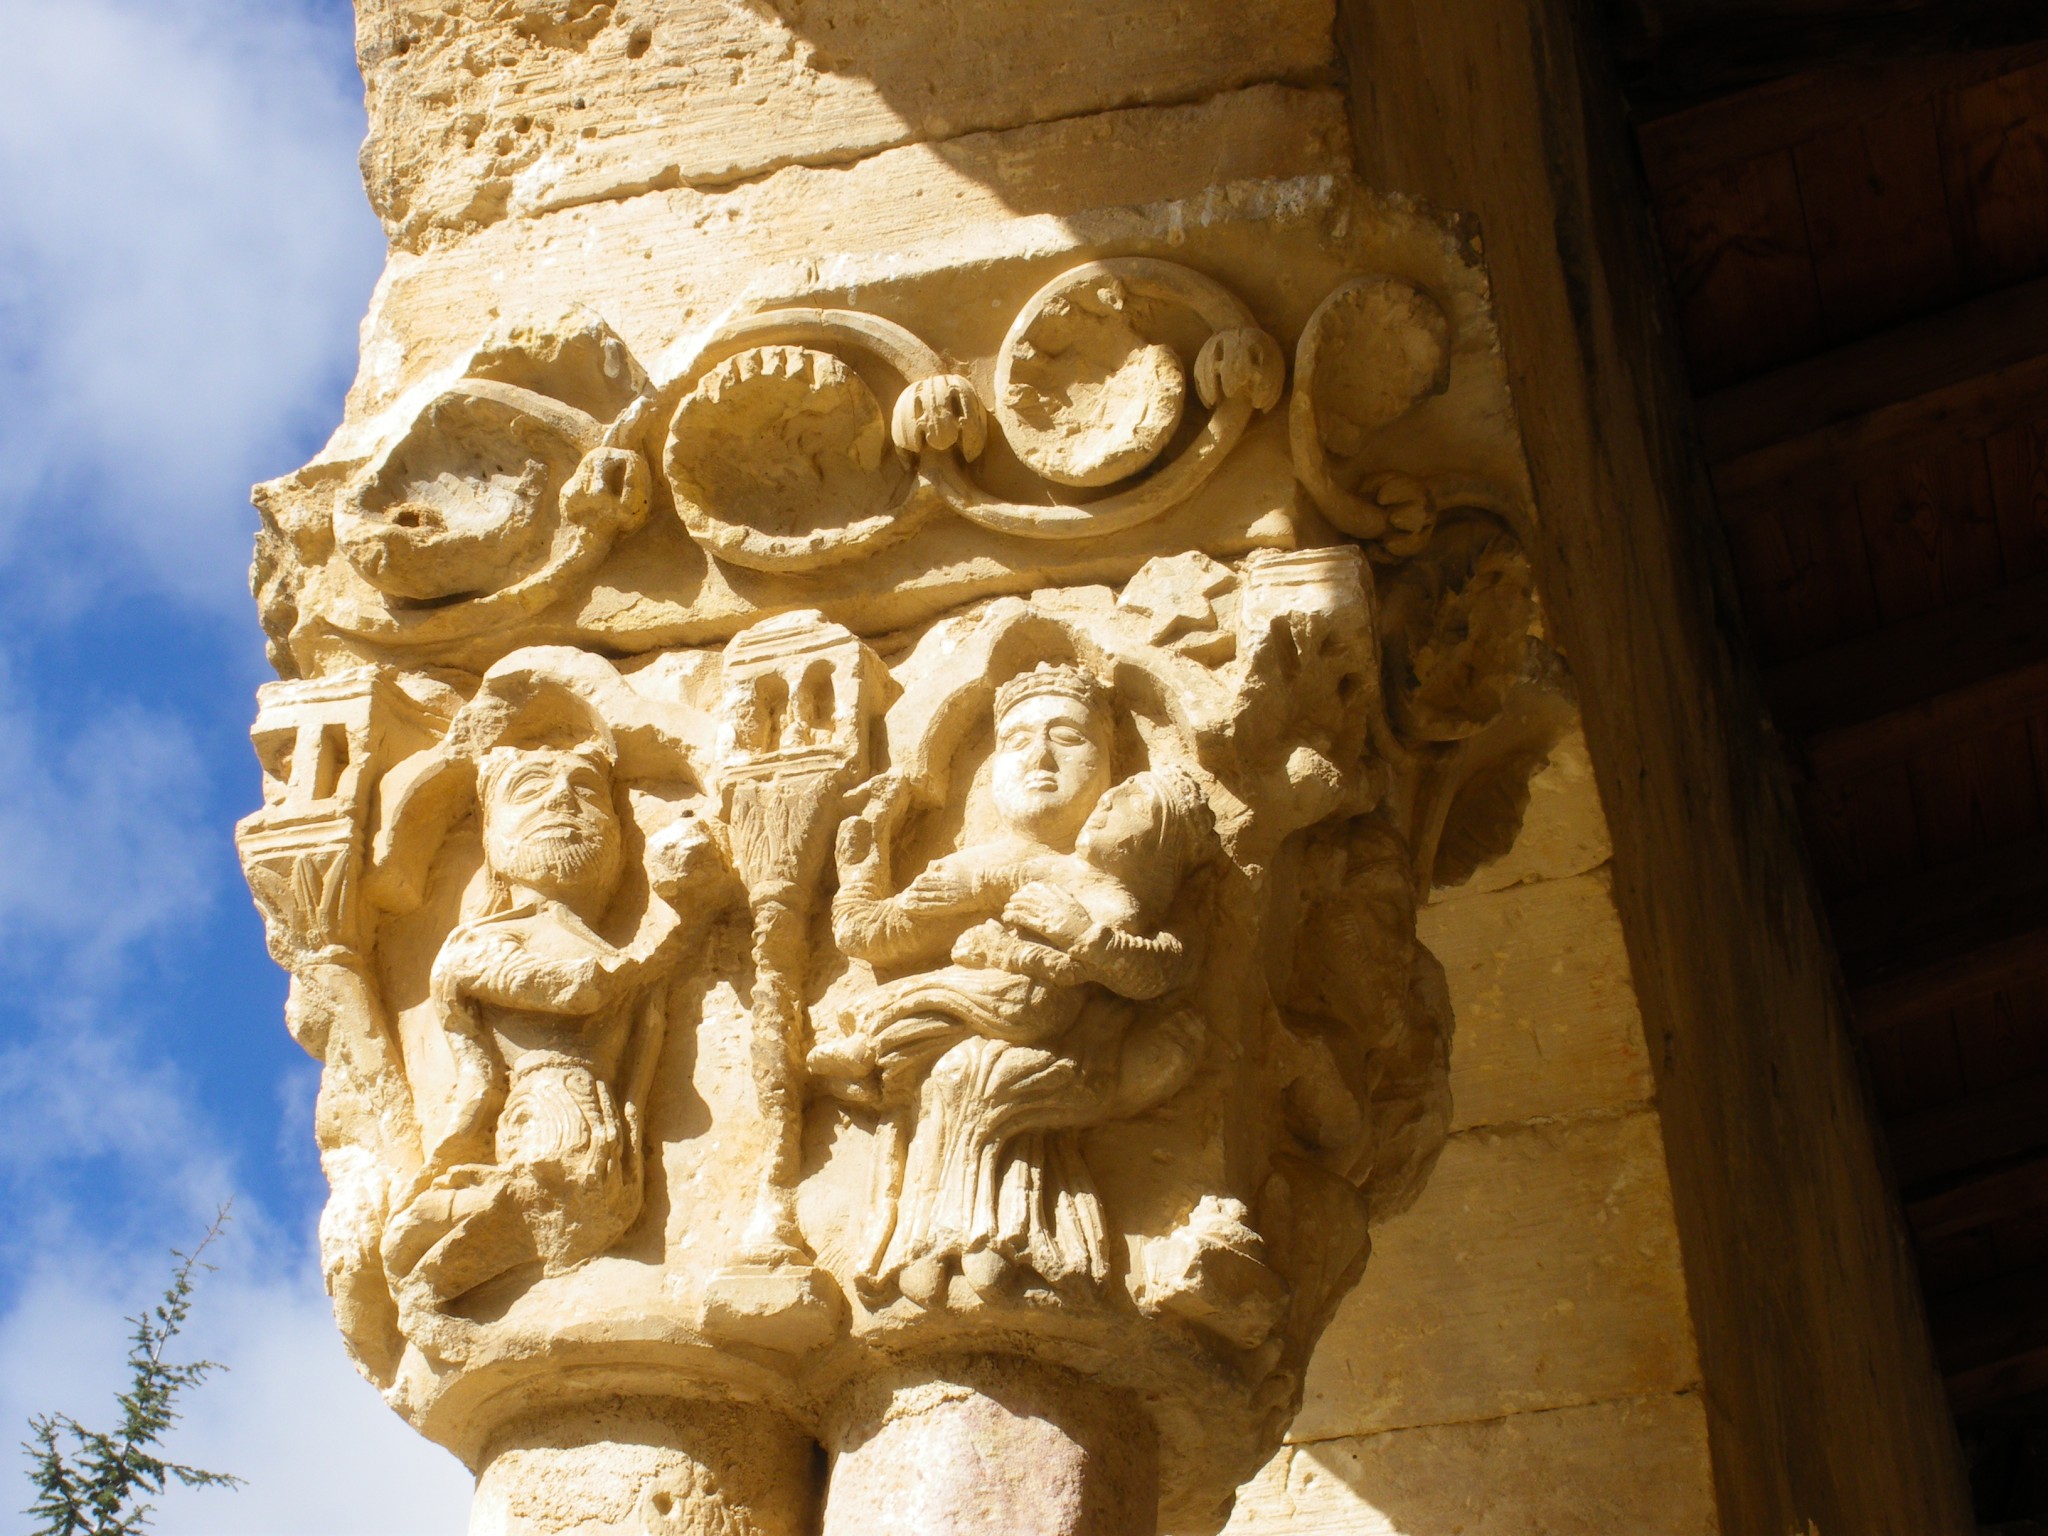 Iglesia románica de Sotosalbos, Segovia, Castilla y León, arte románico, capitel